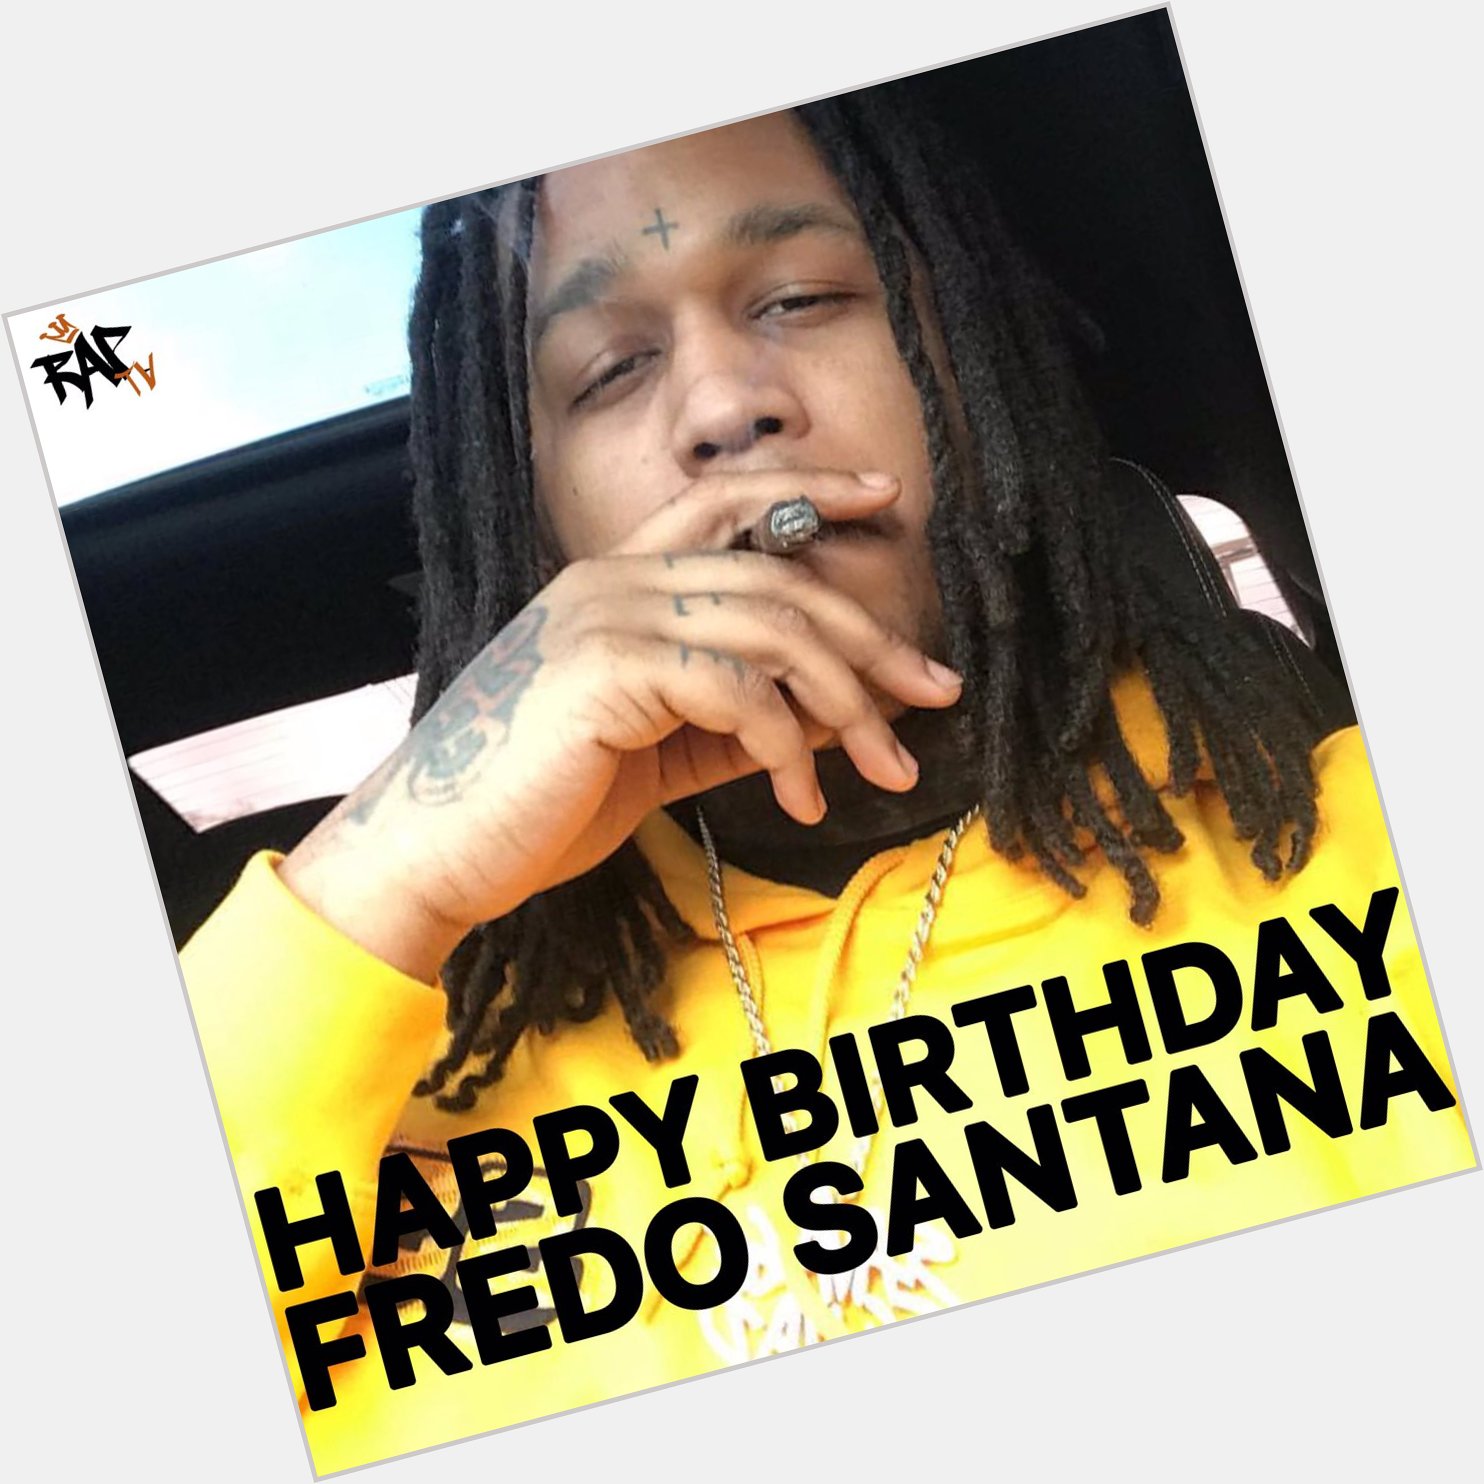 HAPPY BIRTHDAY FREDO SANTANA he would ve turned 29 today  